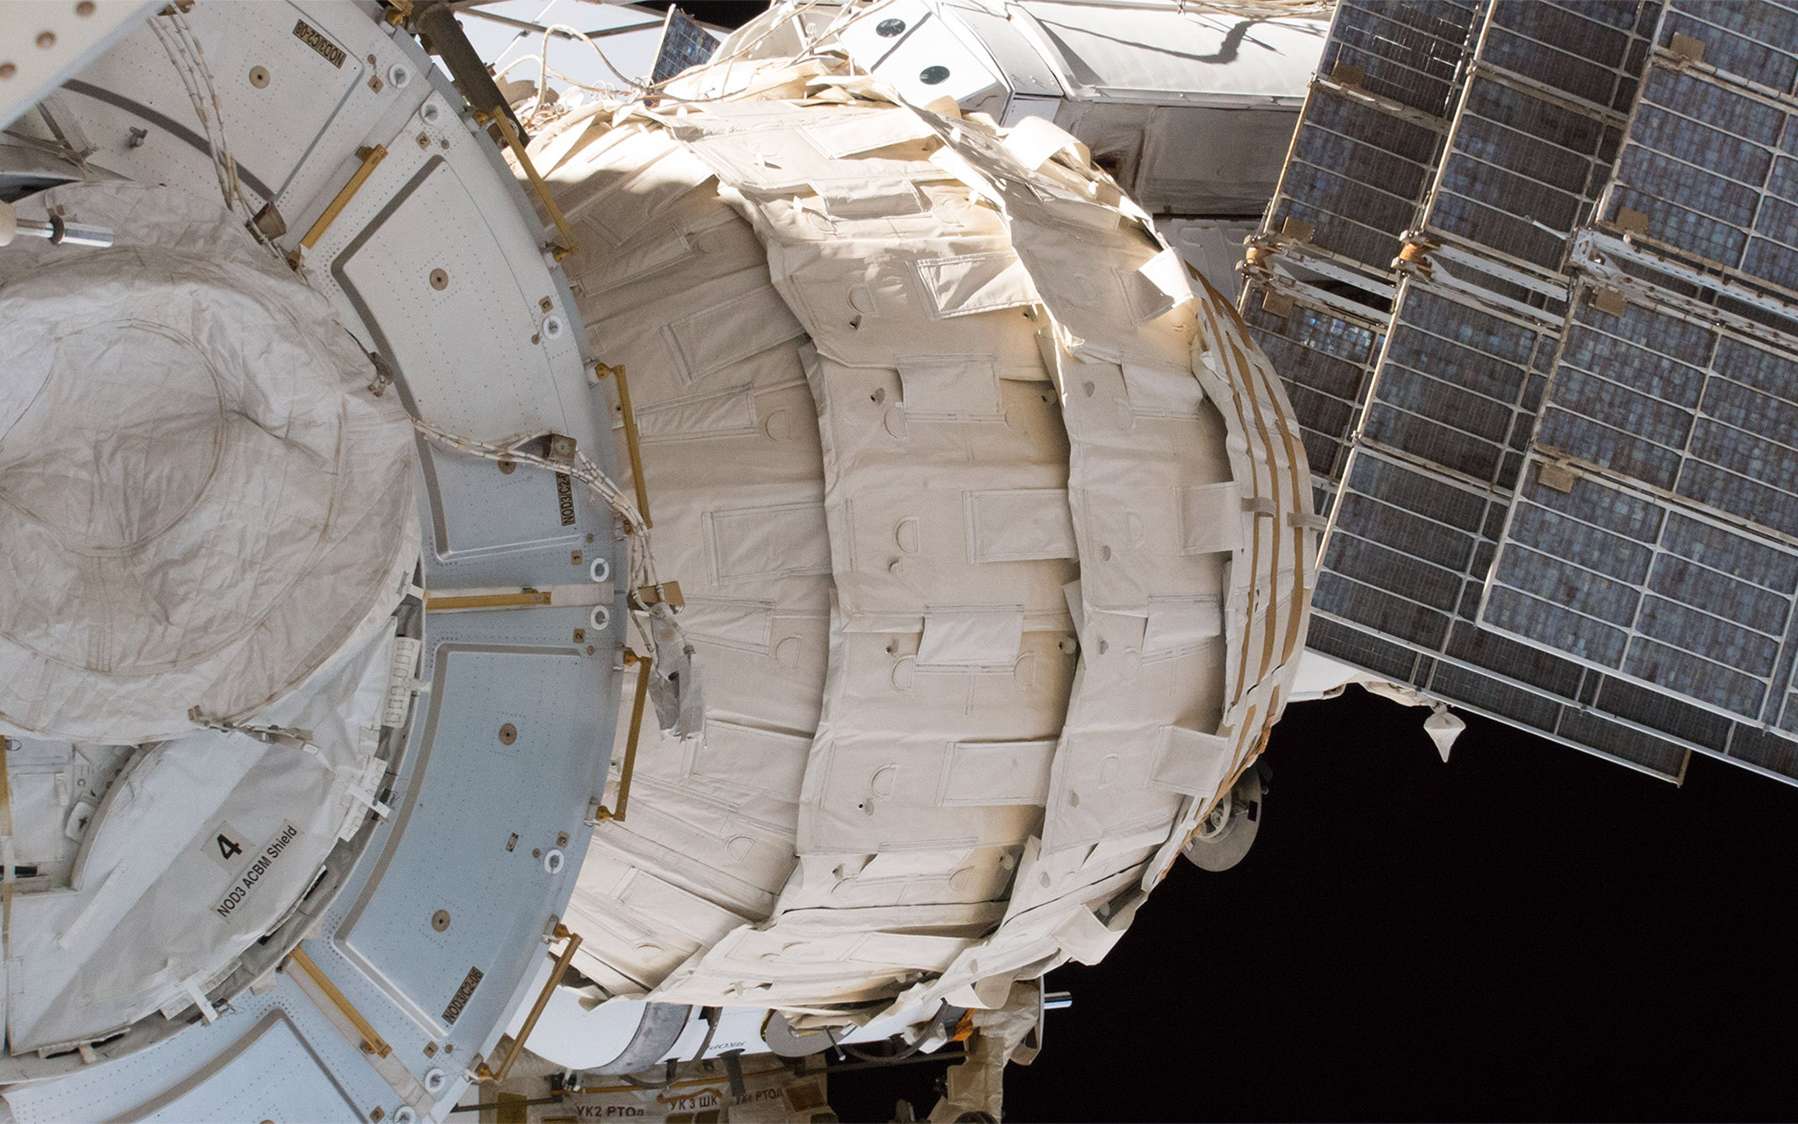 Beam, la structure gonflable de l'ISS, n'ira pas sur la Lune dans l'immédiat